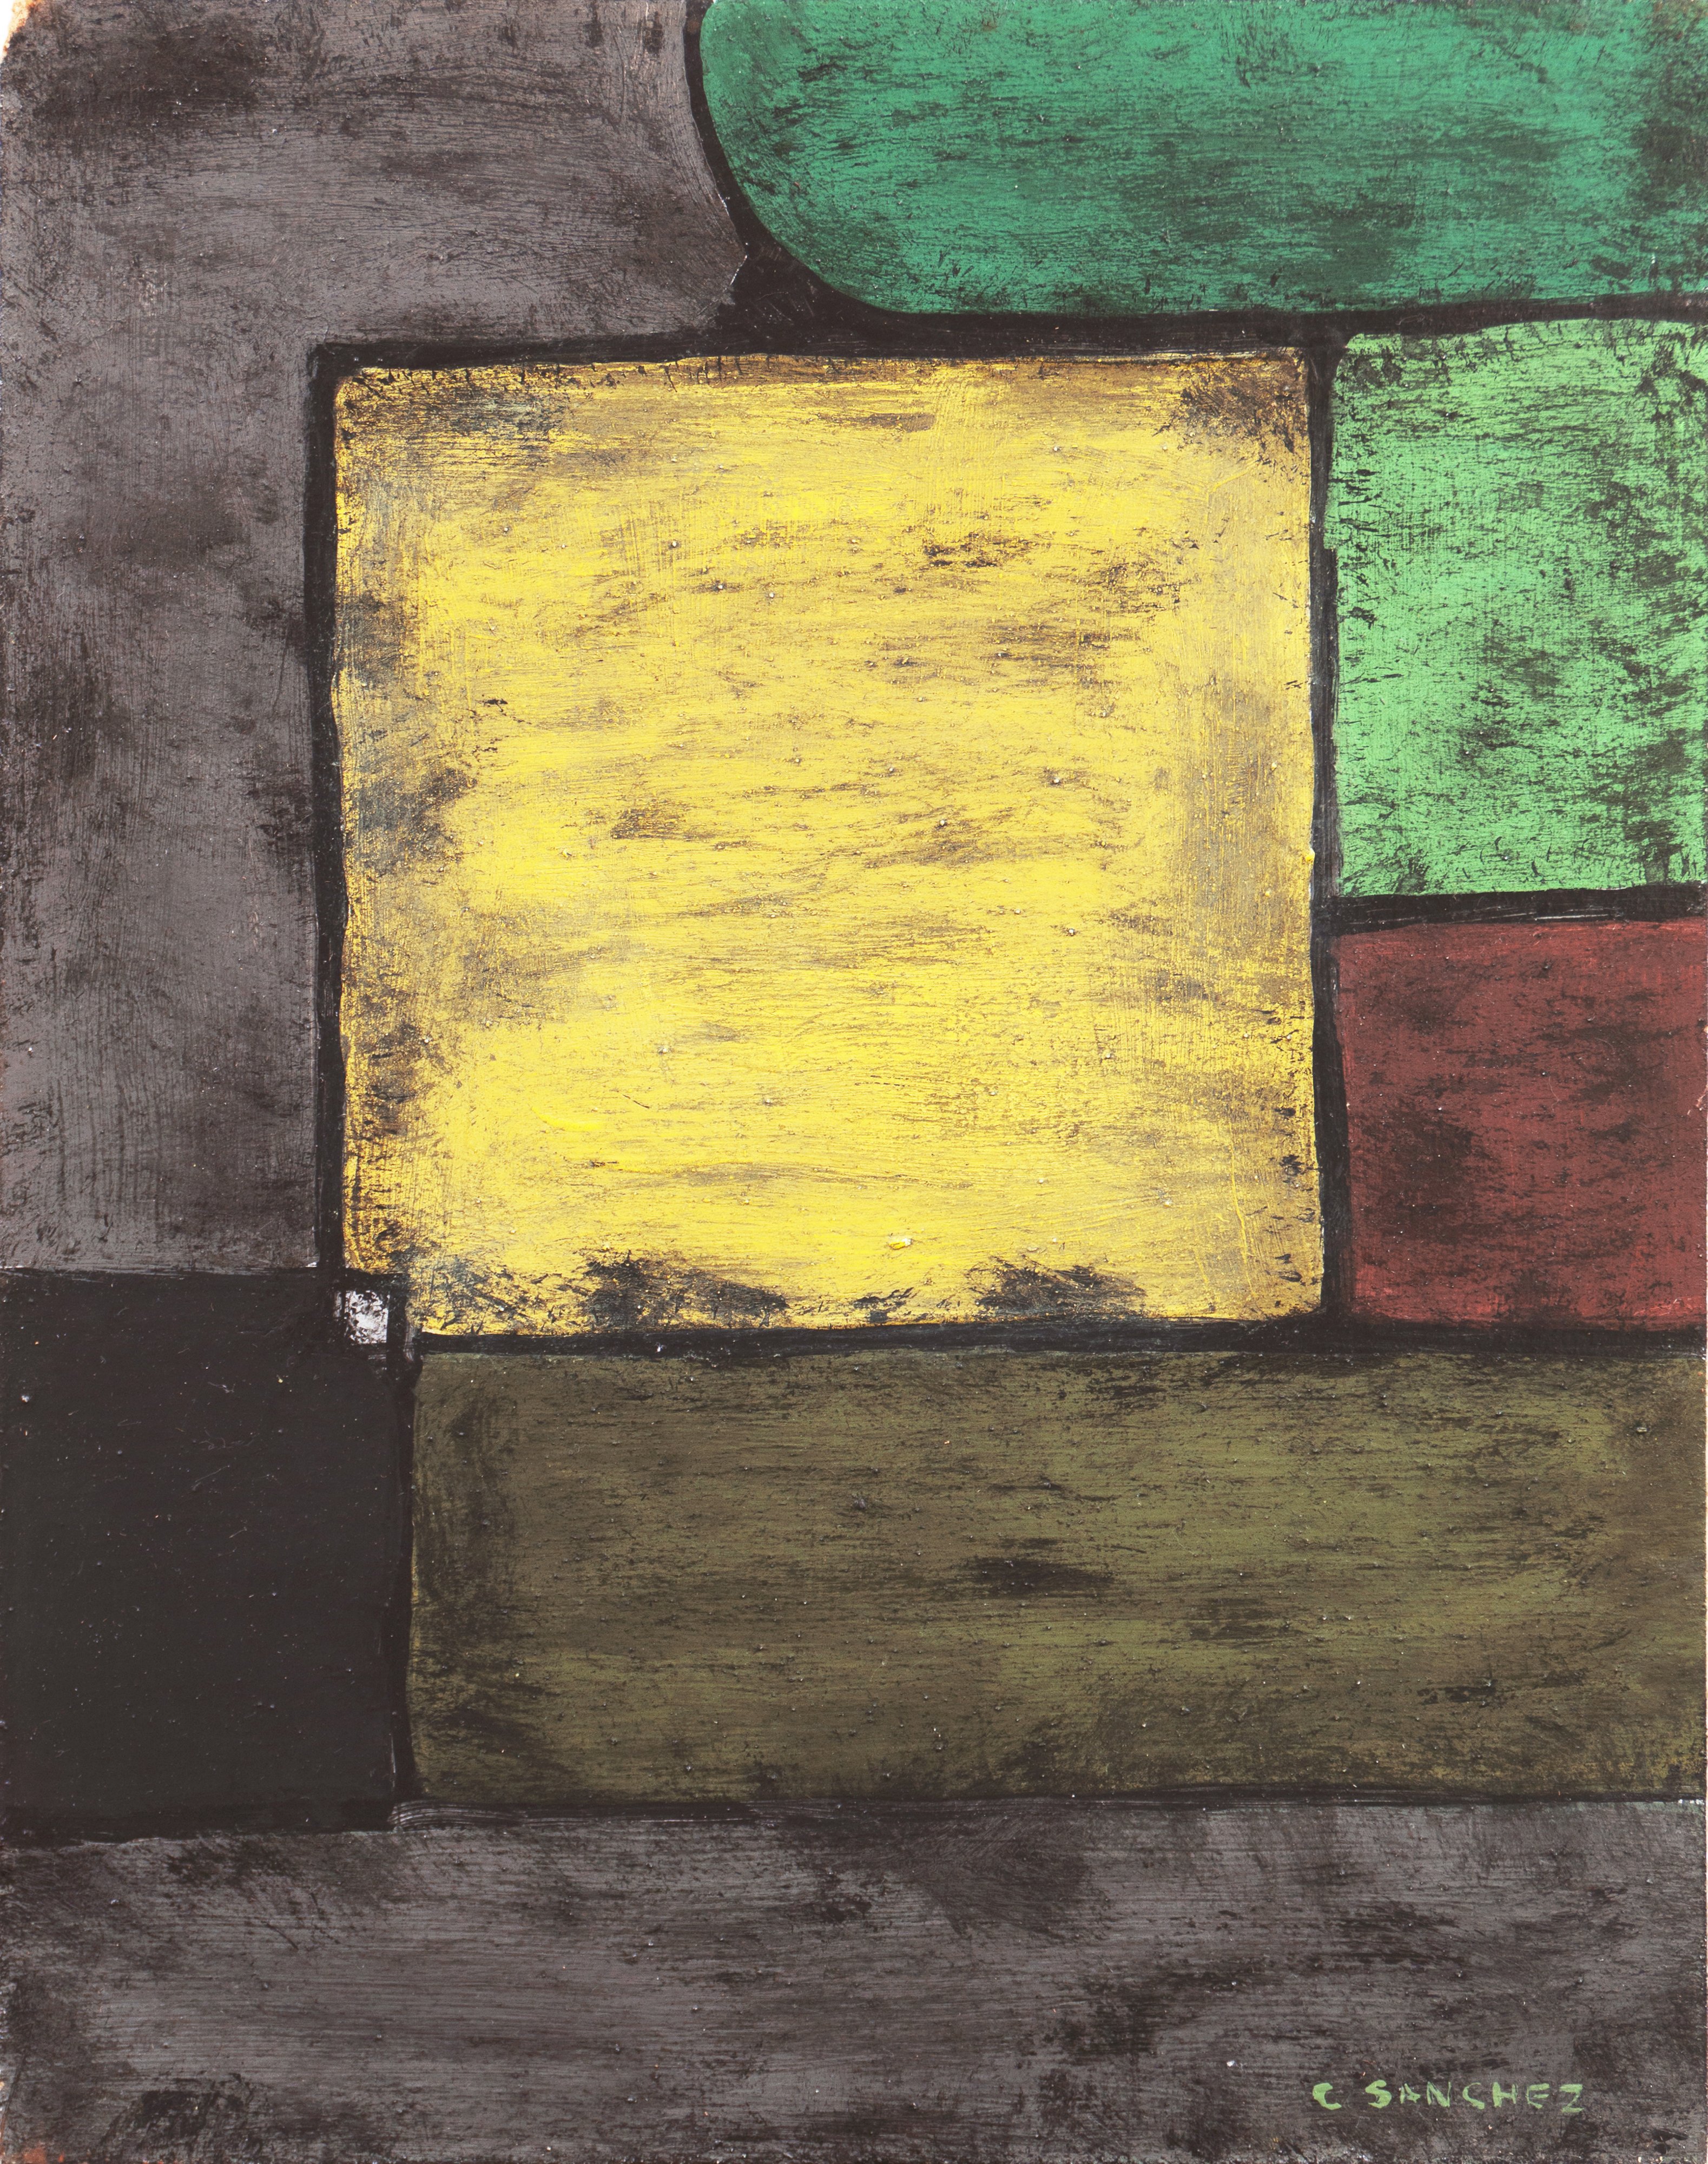 Green & Yellow Abstract, Carlos Sanchez~P77534372